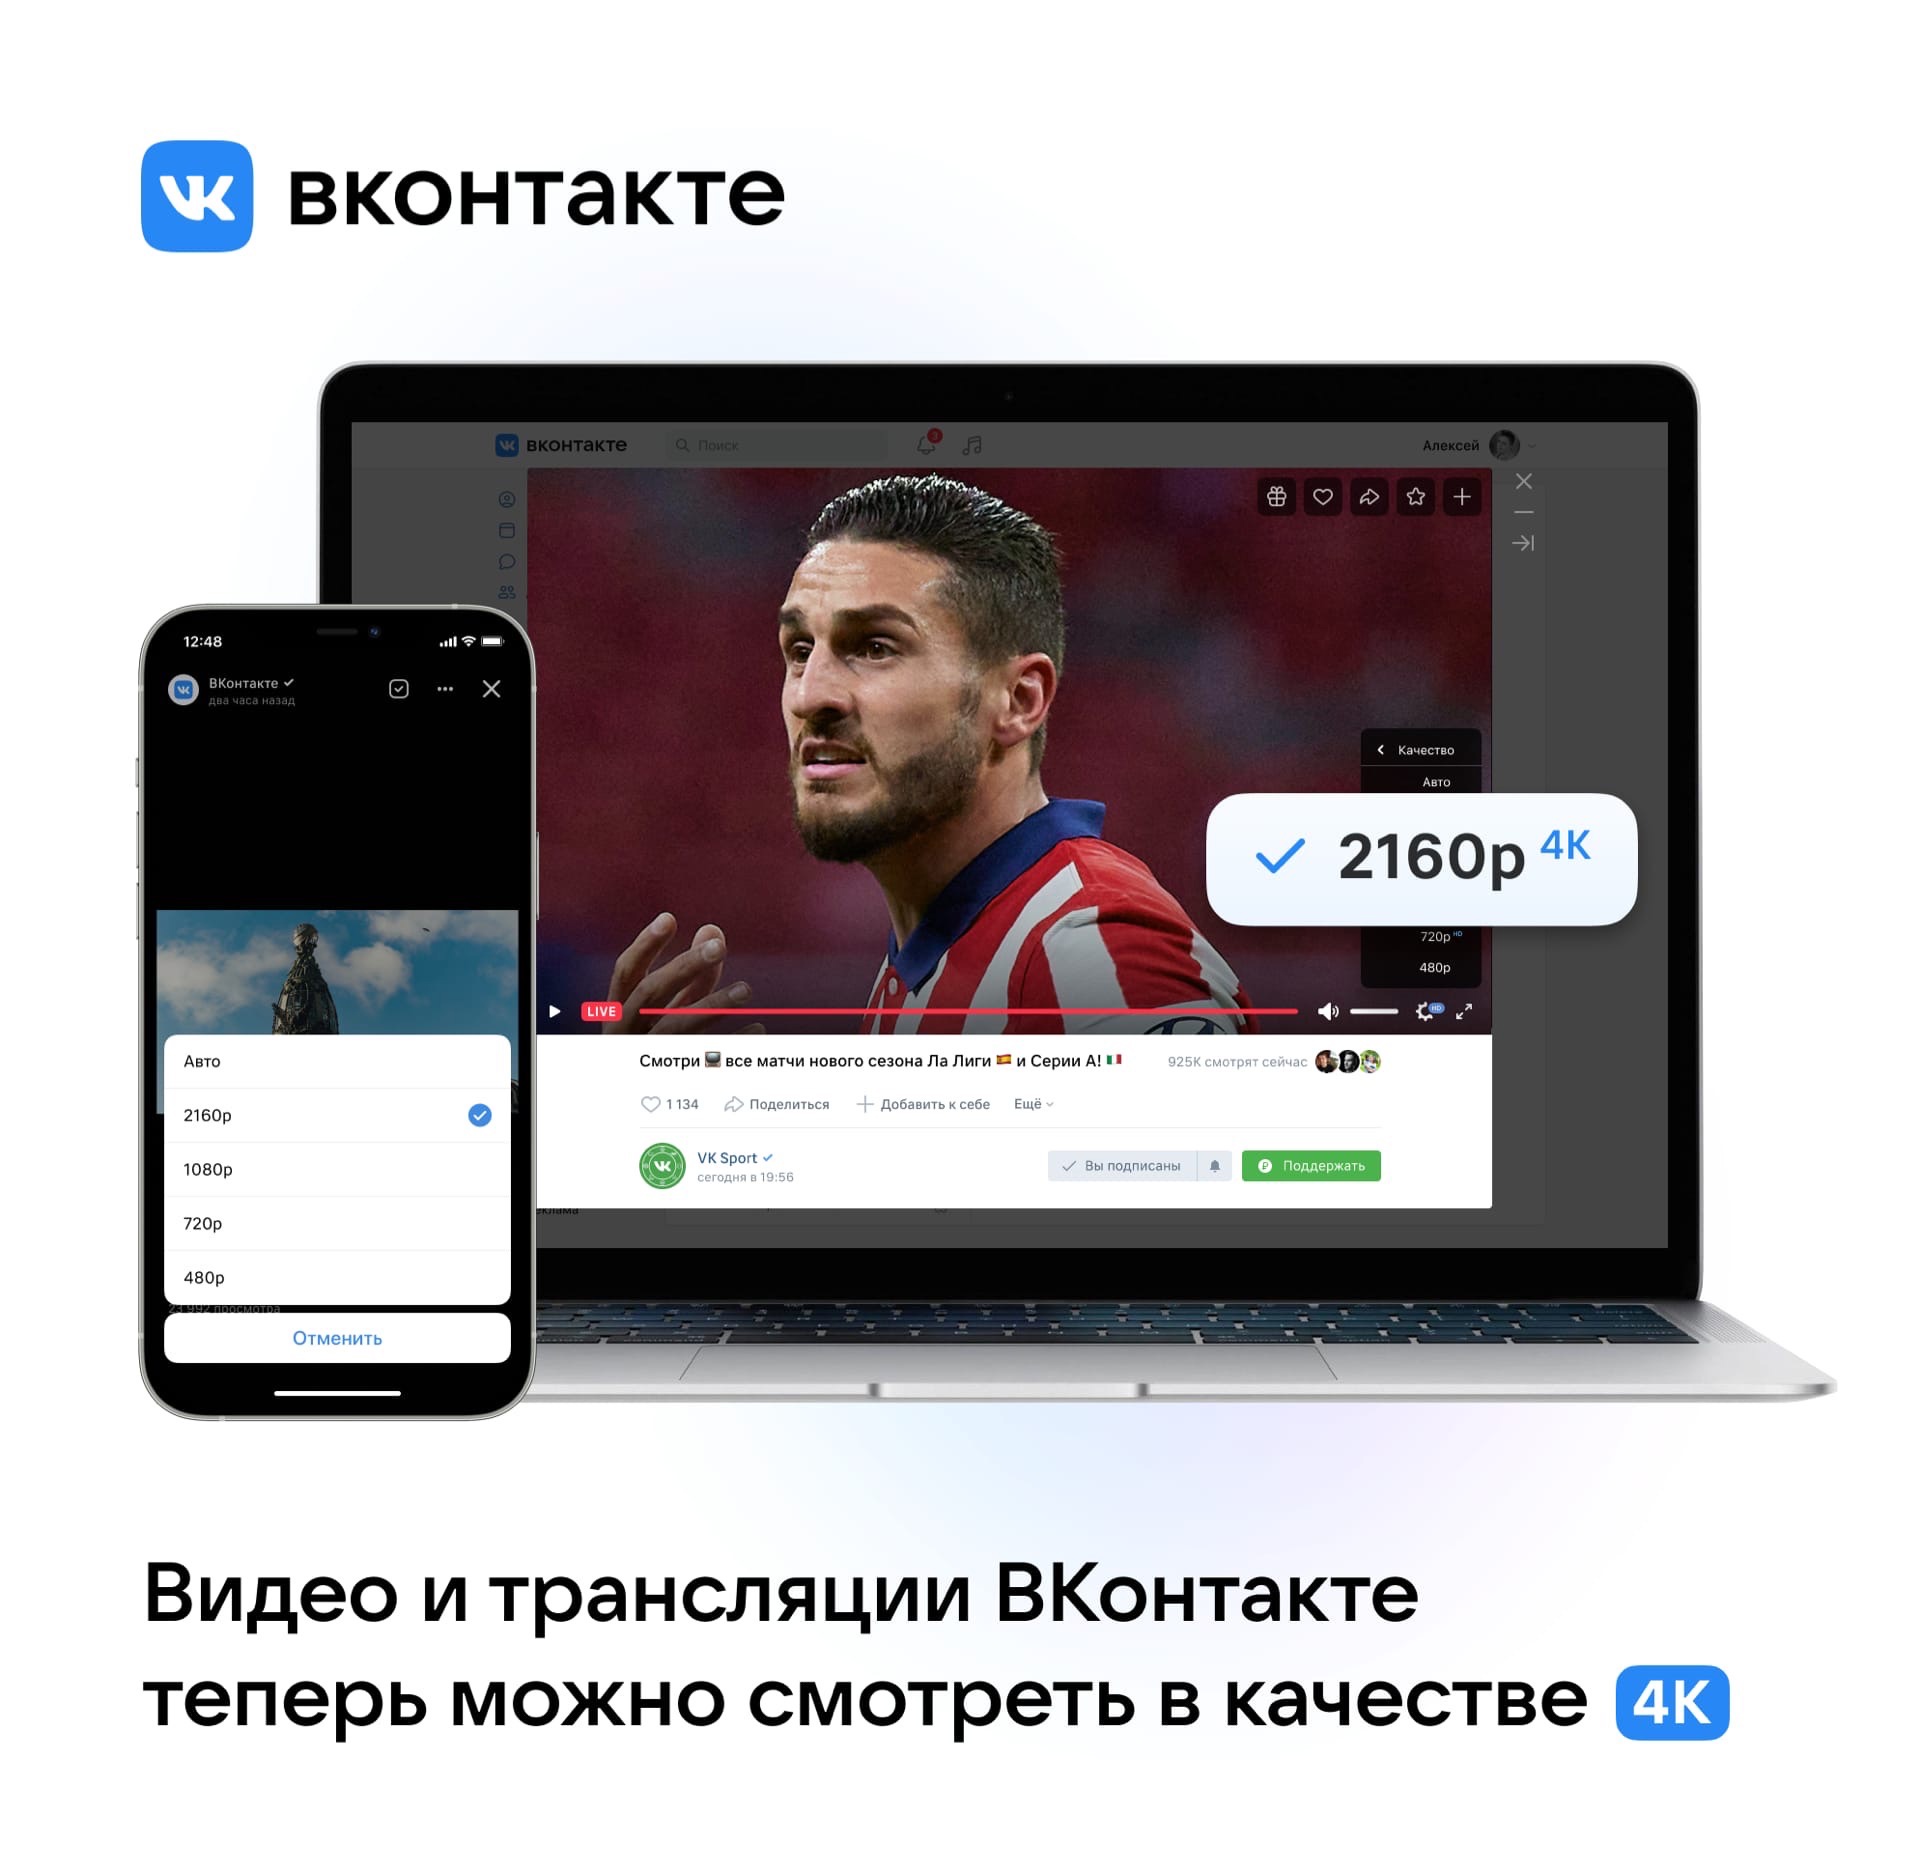 ВКонтакте запустил большое обновление видеоплатформы, Miracle, 21 авг 2021, 17:56, jgrojnbqan ik haboxsvuuuhbibhe 4mt.jpg